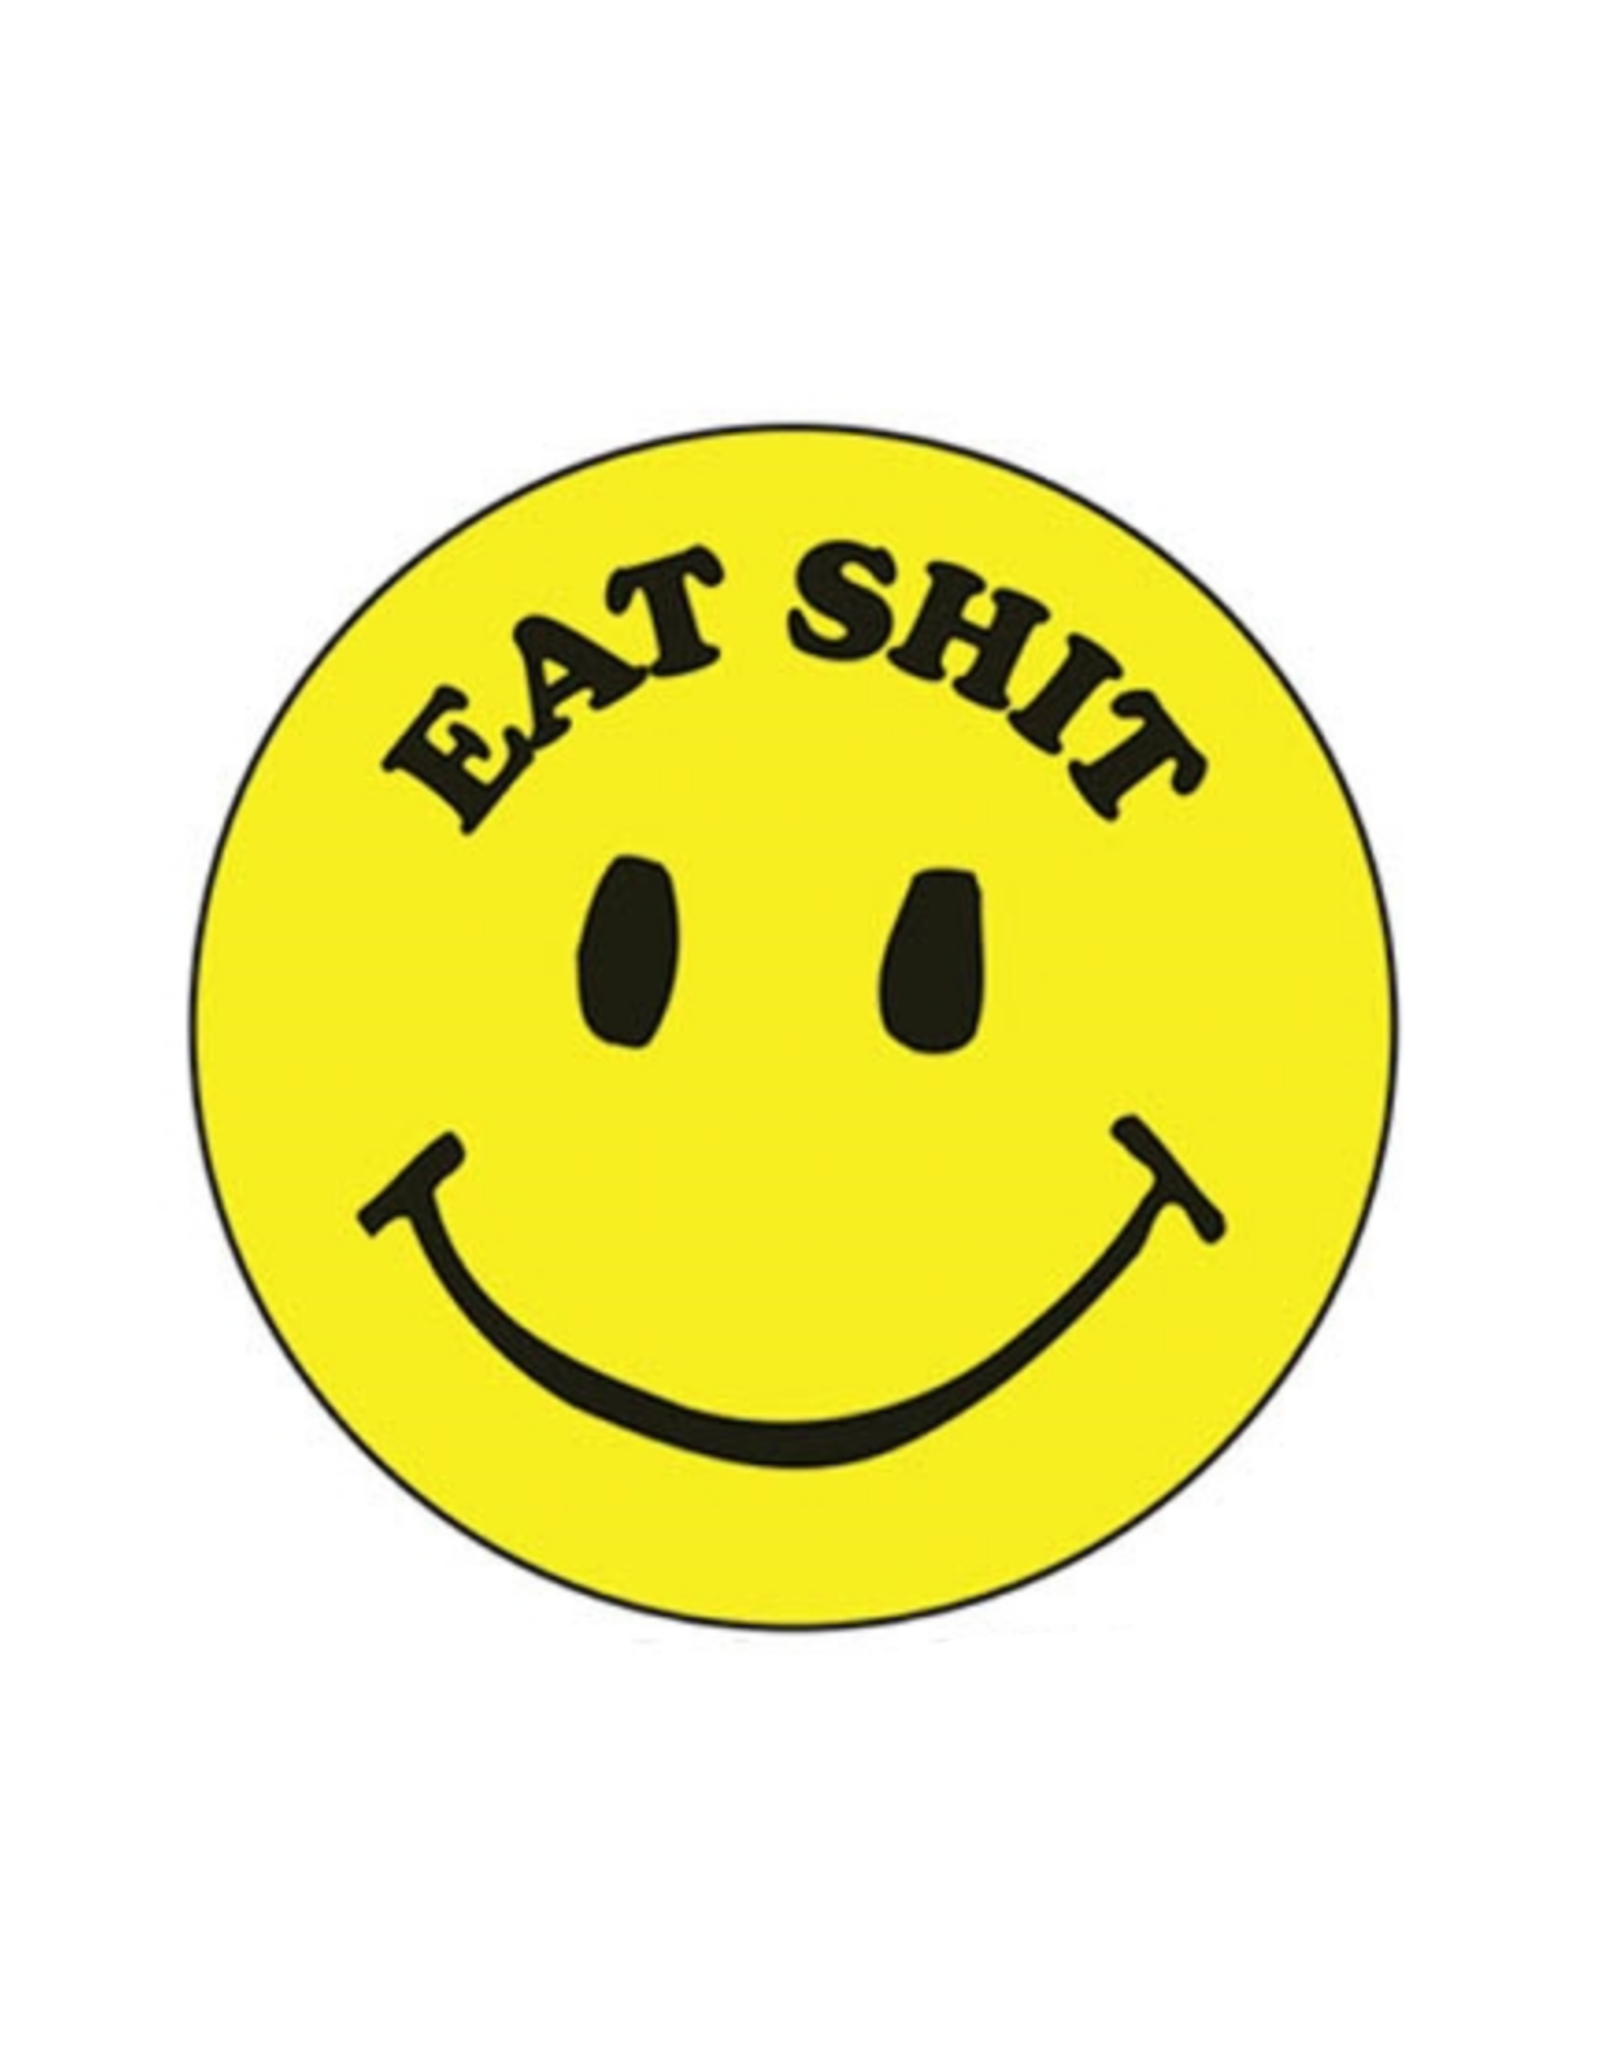 Eat Shit Smiley Face Button